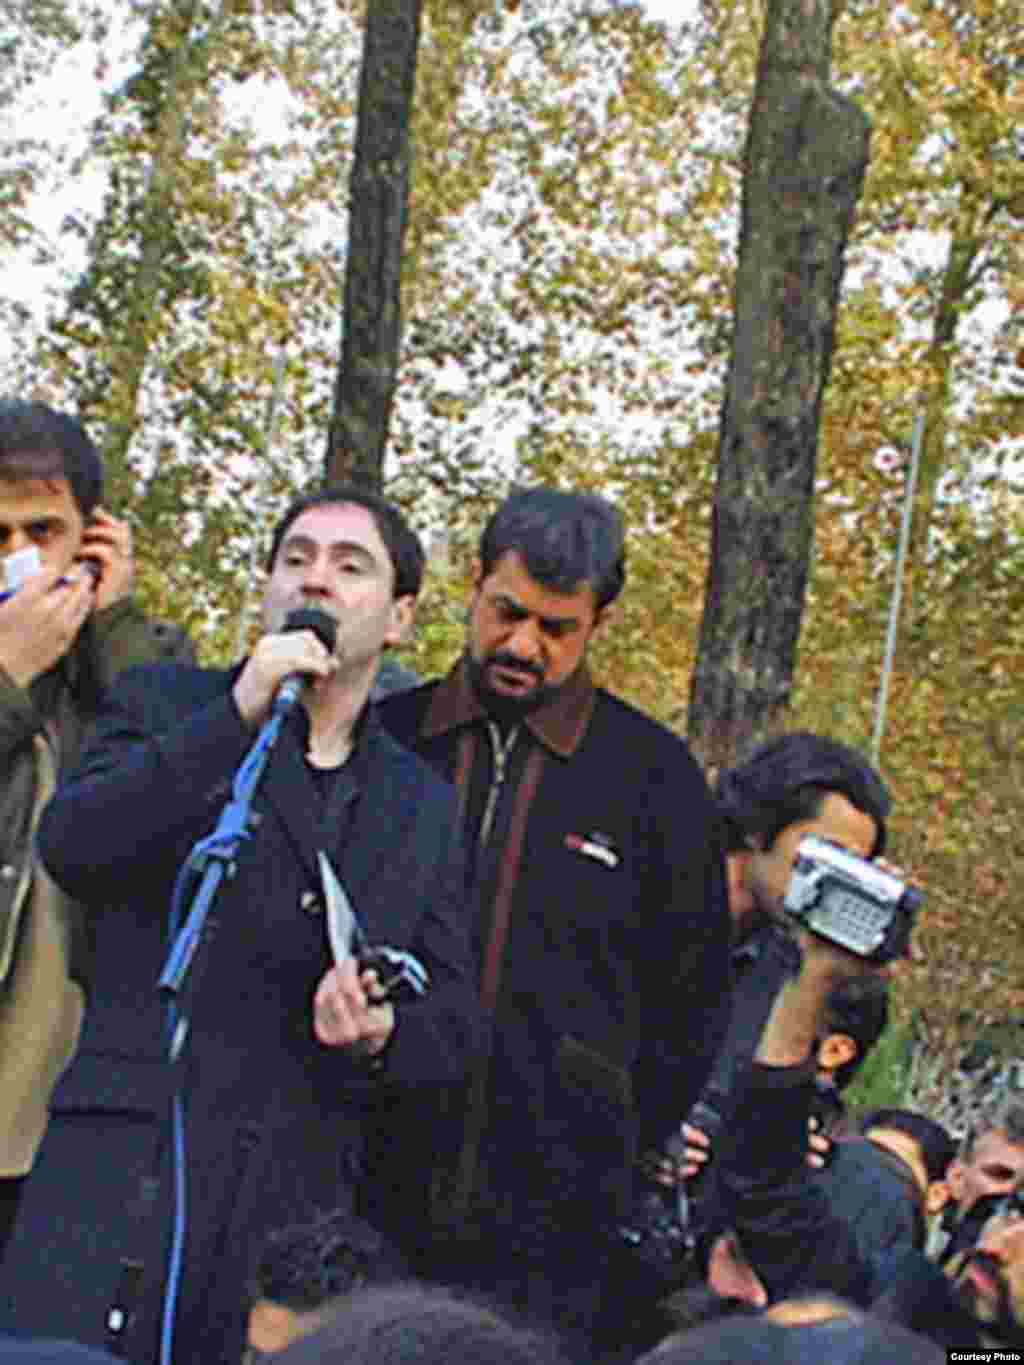 خشایار اعتمادی، خواننده محبوب امروز، زمانی مورد توجه بابک بیات قرار گرفت که در جامعه موسیقی ایران، کمتر کسی او را می شناخت. او نیز در این مراسم سخنرانی کرد و گفت : «او هرگز گذشته اش را فراموش نکرد.»